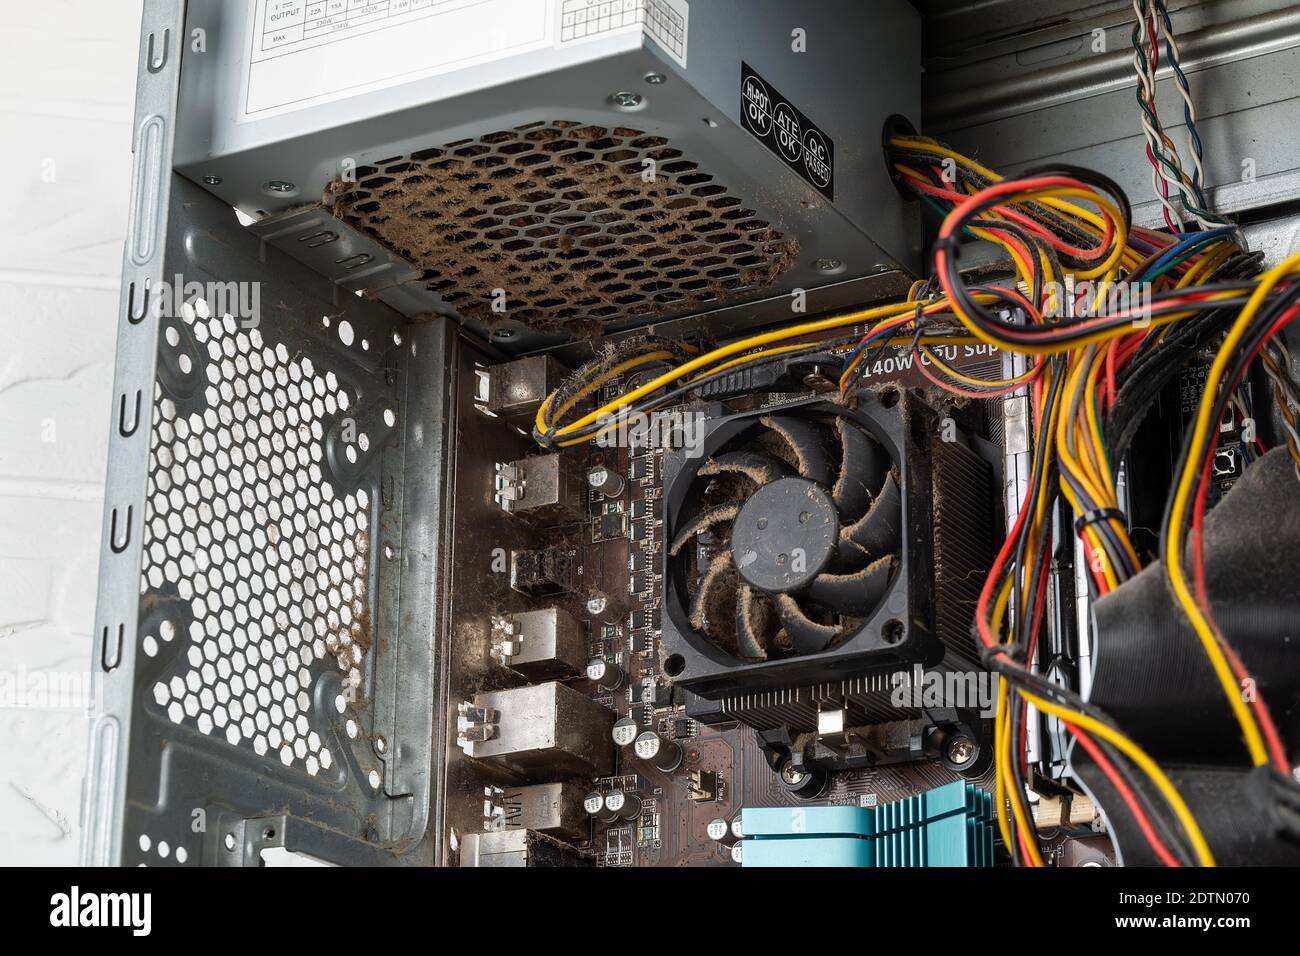 Im Inneren des Tower-Computergehäuses mit staubigen defekten Netzteilen vor dem Austausch durch ein neues. Ersatz des PC-Netzteils, Hardware. Stockfoto